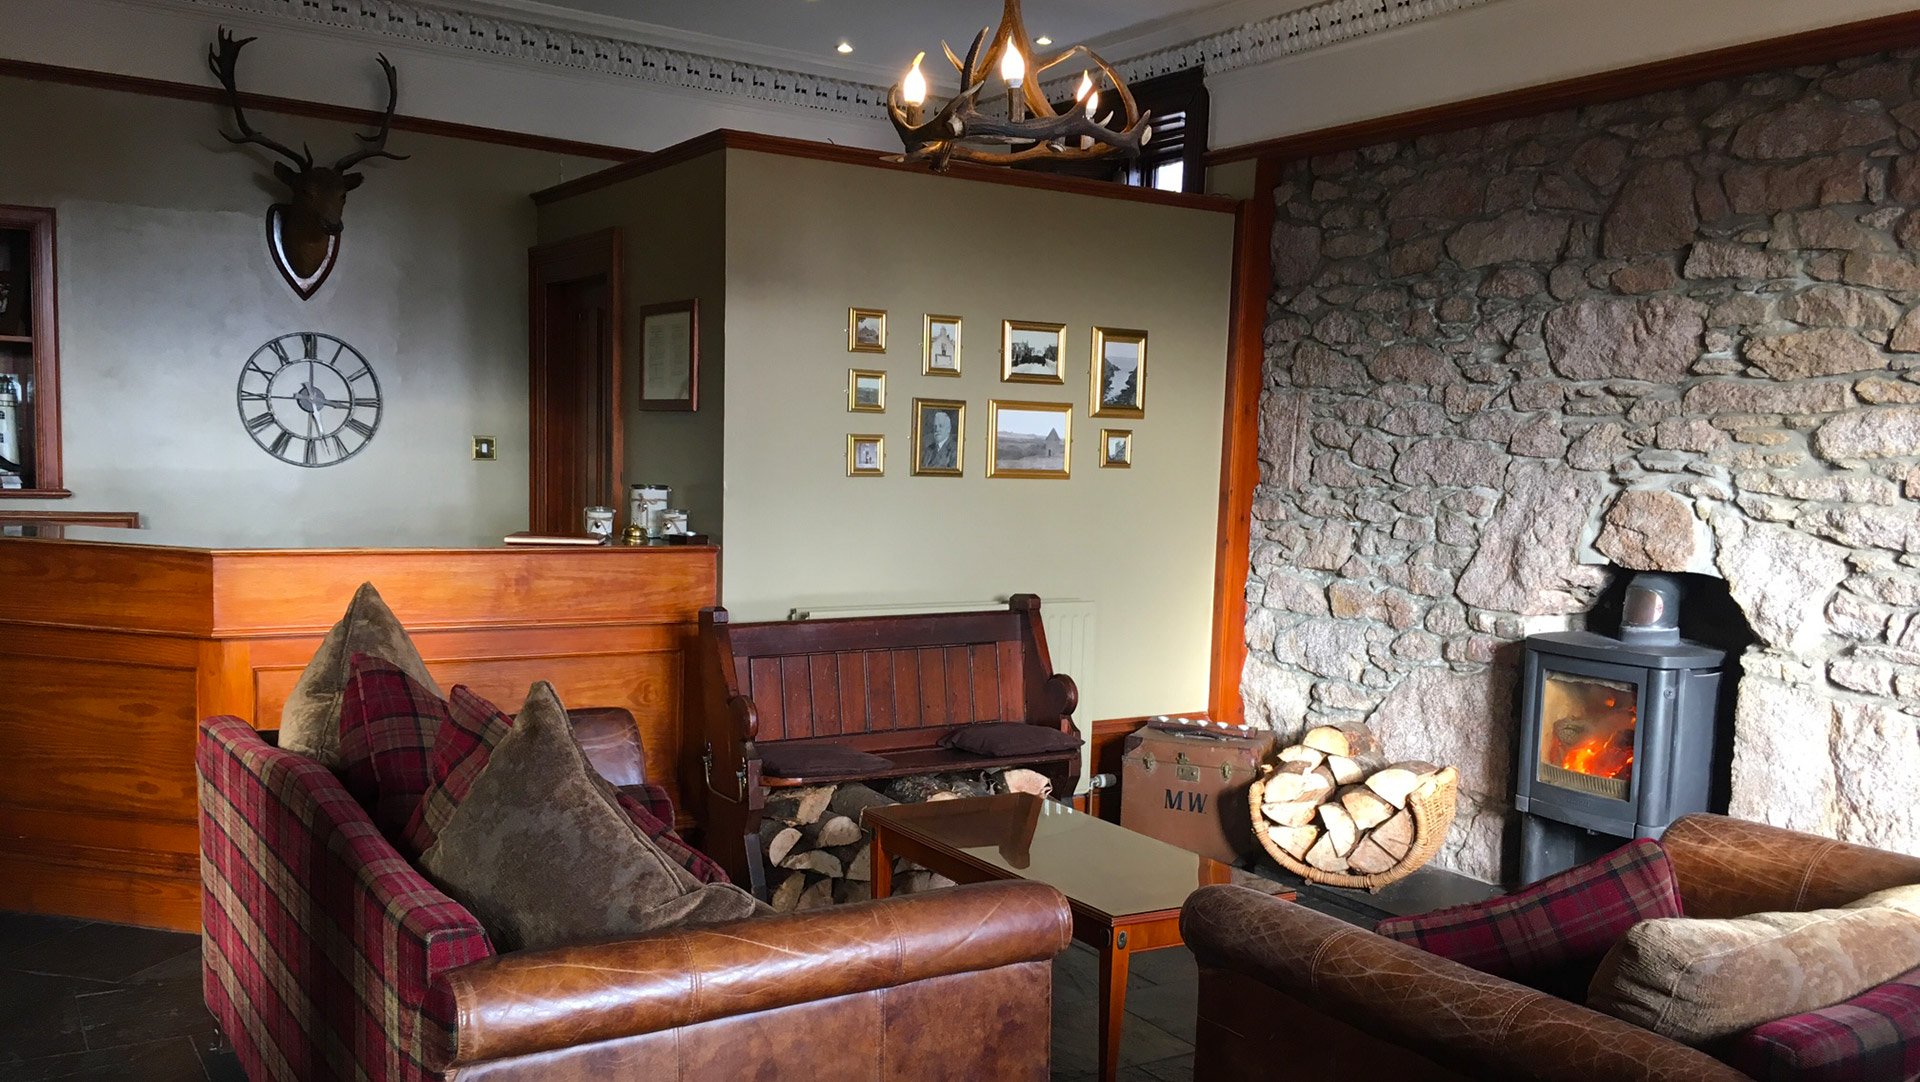 Kilmarnock Arms Hotel - Reception